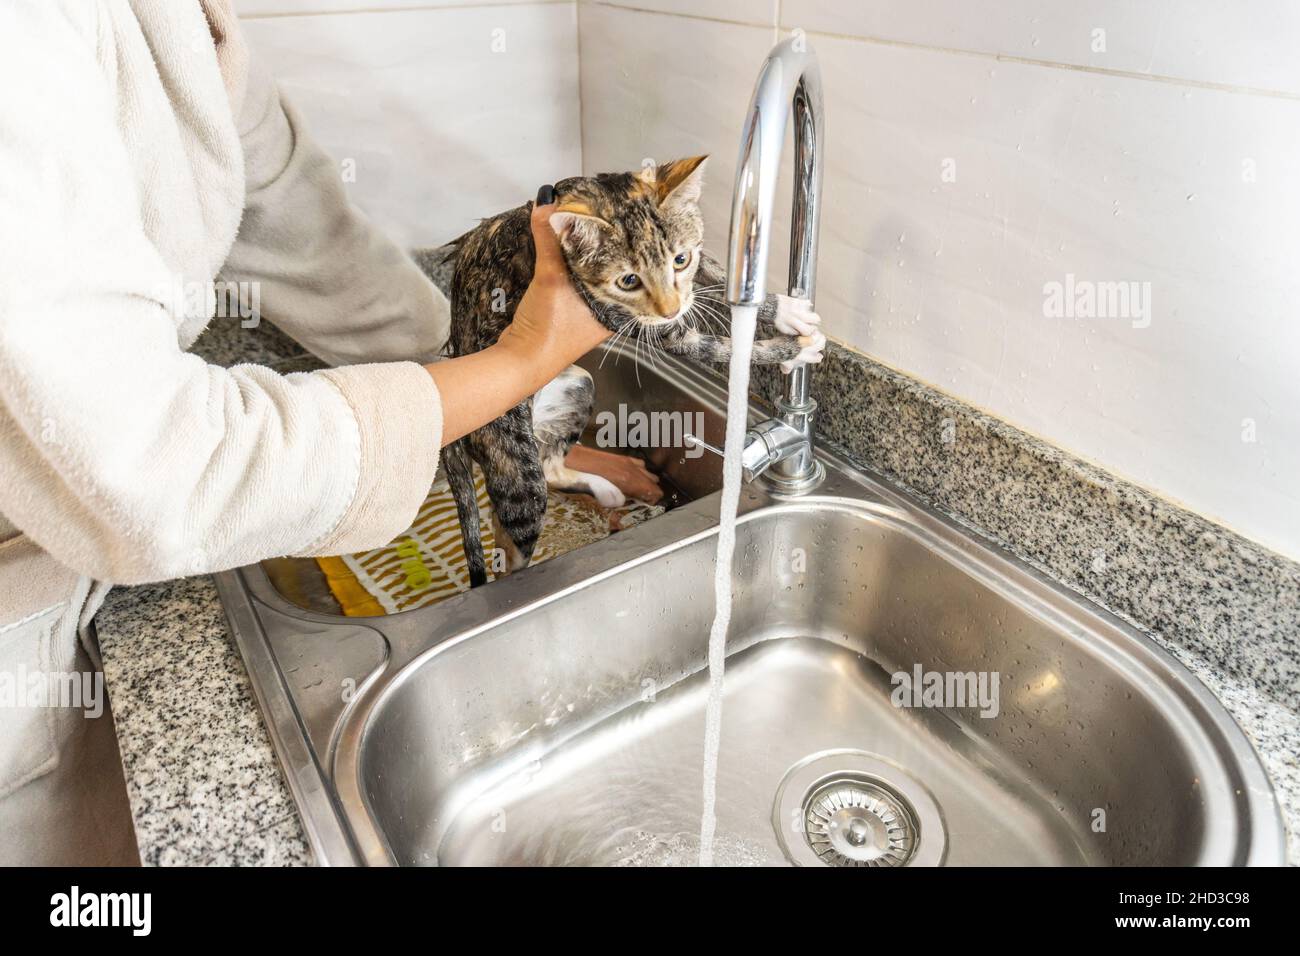 Mains d'une personne méconnaissable baignant un chat gris dans la cuisine lave-vaisselle Banque D'Images